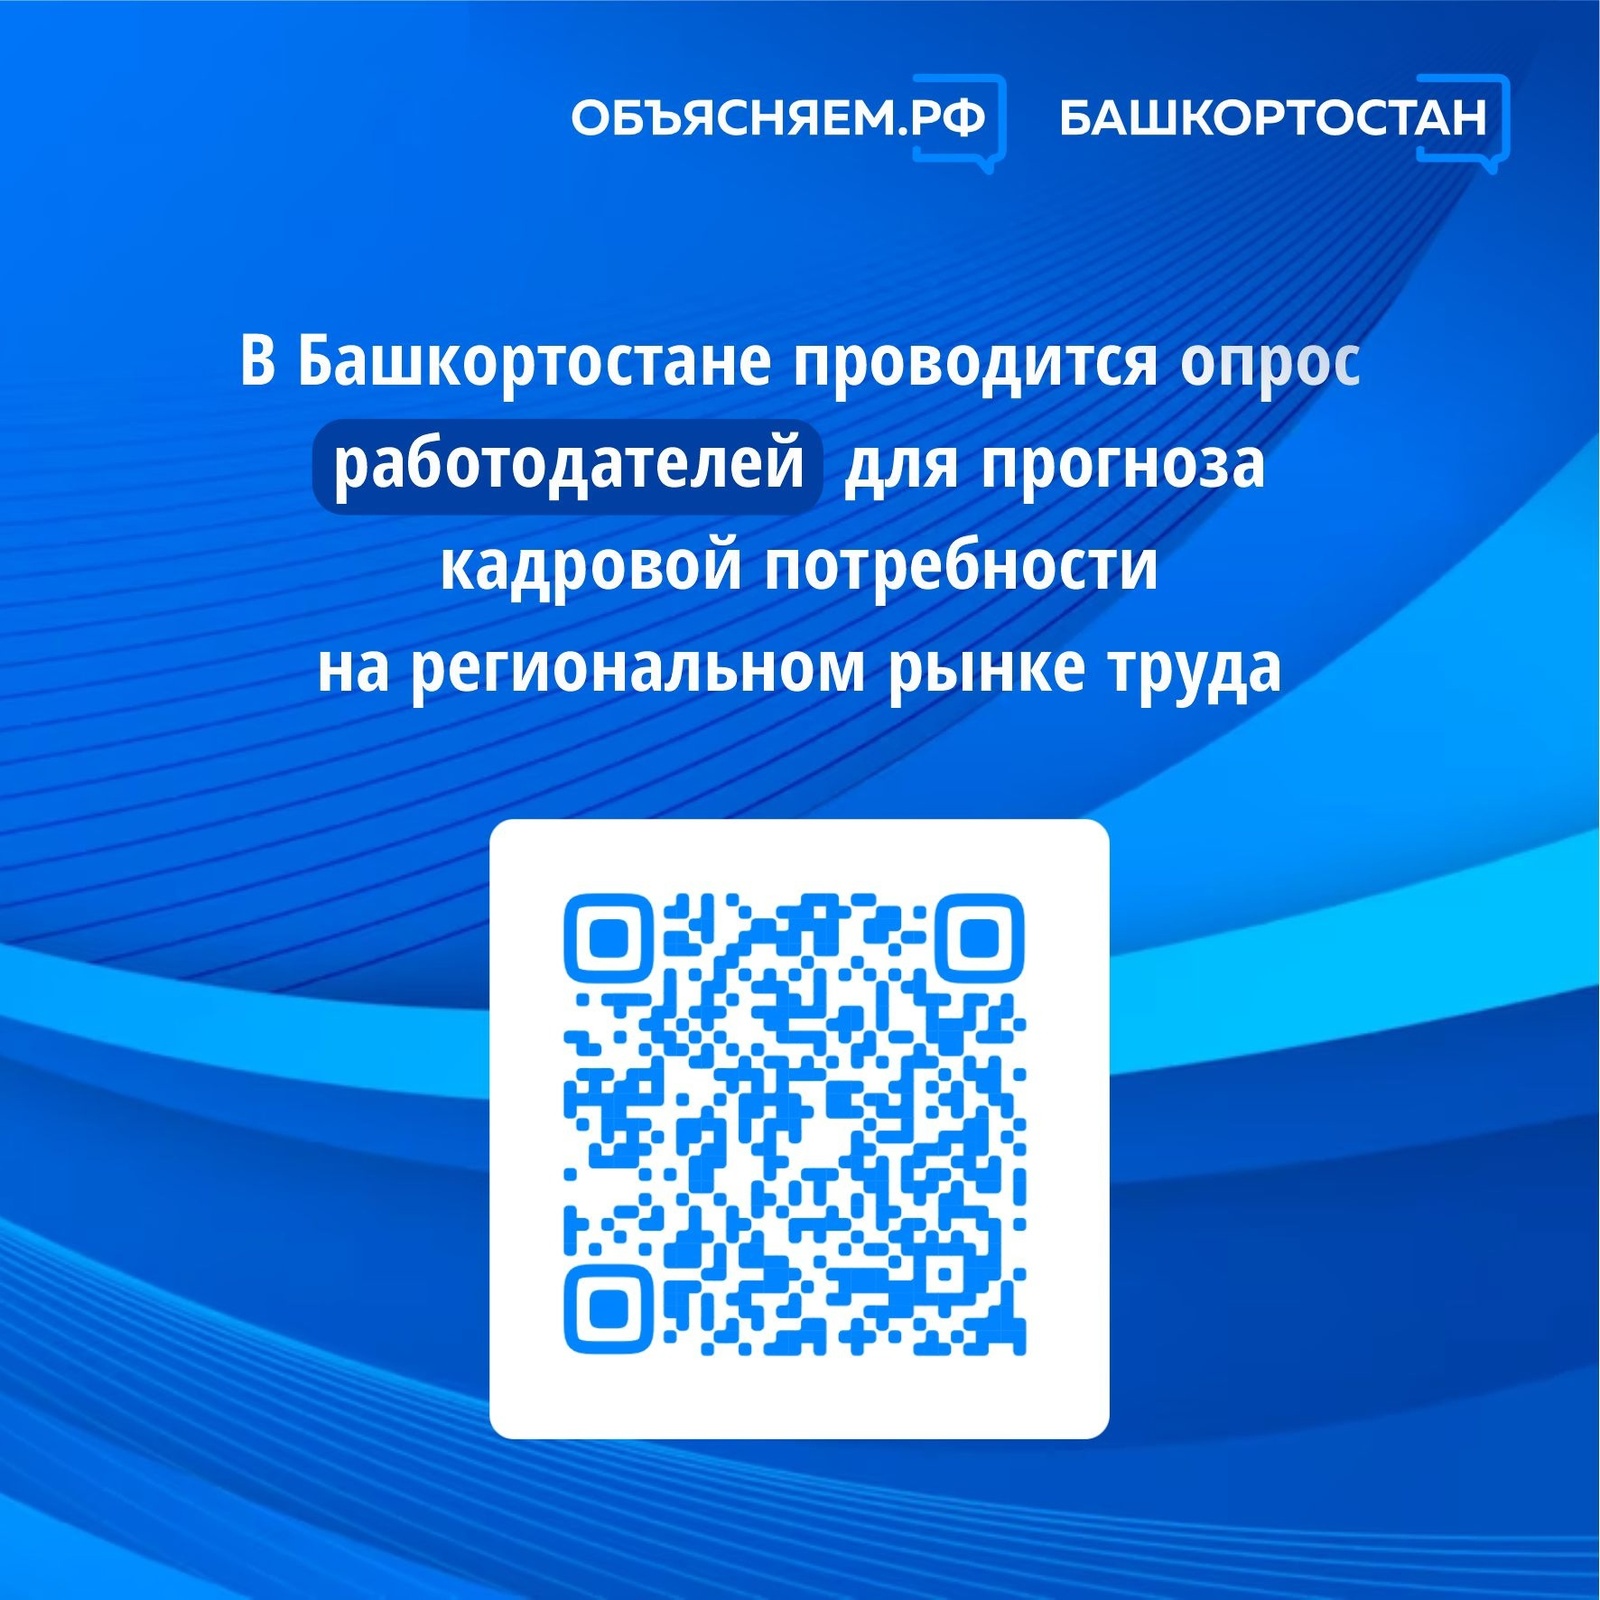 В Башкортостане проводится опрос работодателей для прогноза кадровой потребности